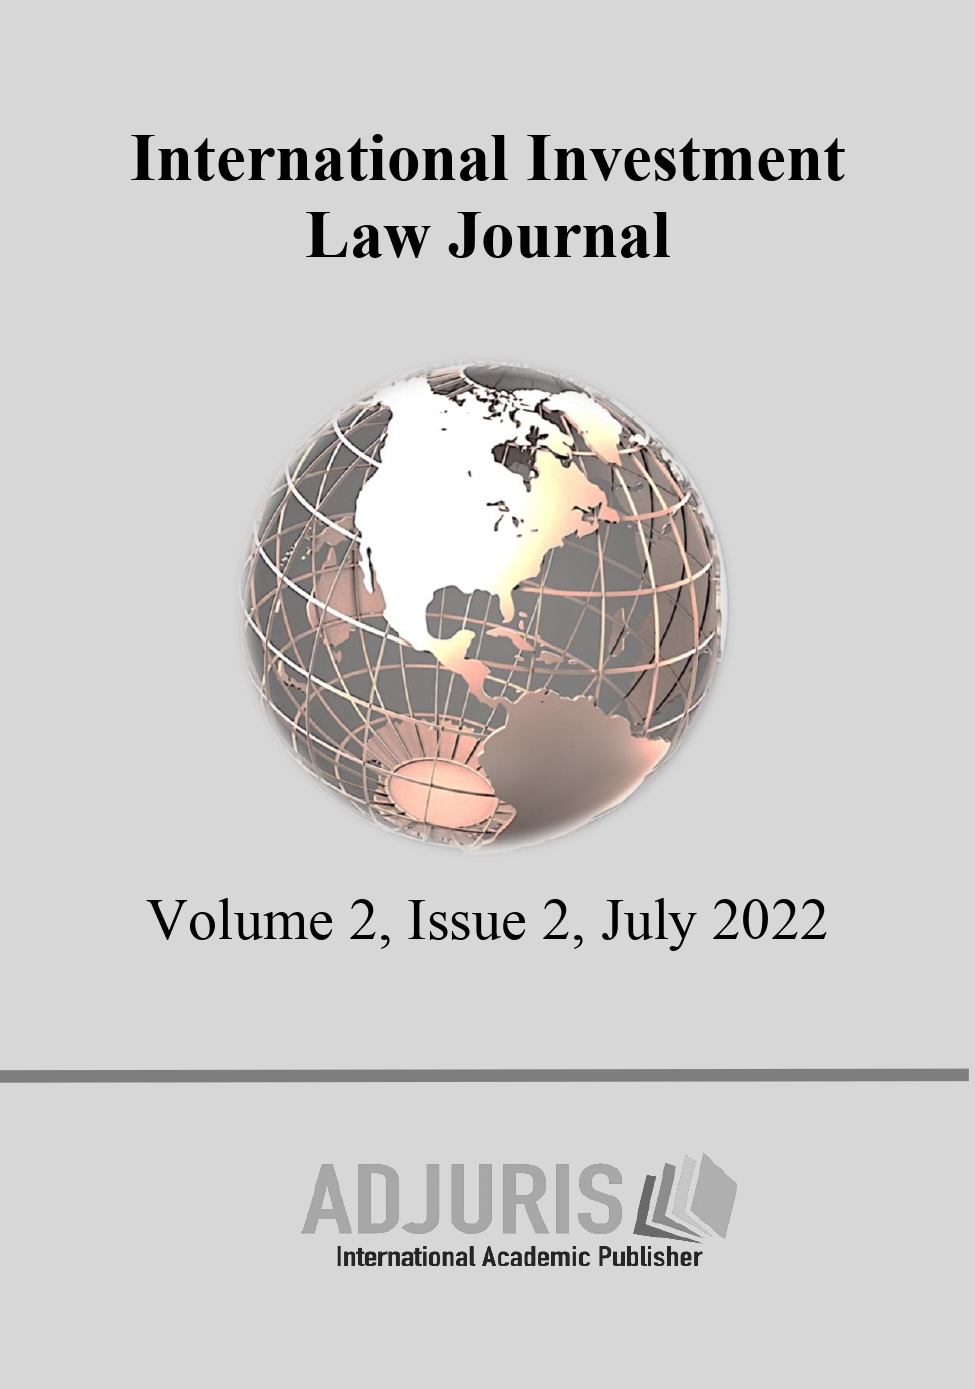 Iura Novit Curia versus Iura Novit Arbiter in International Arbitration Cover Image